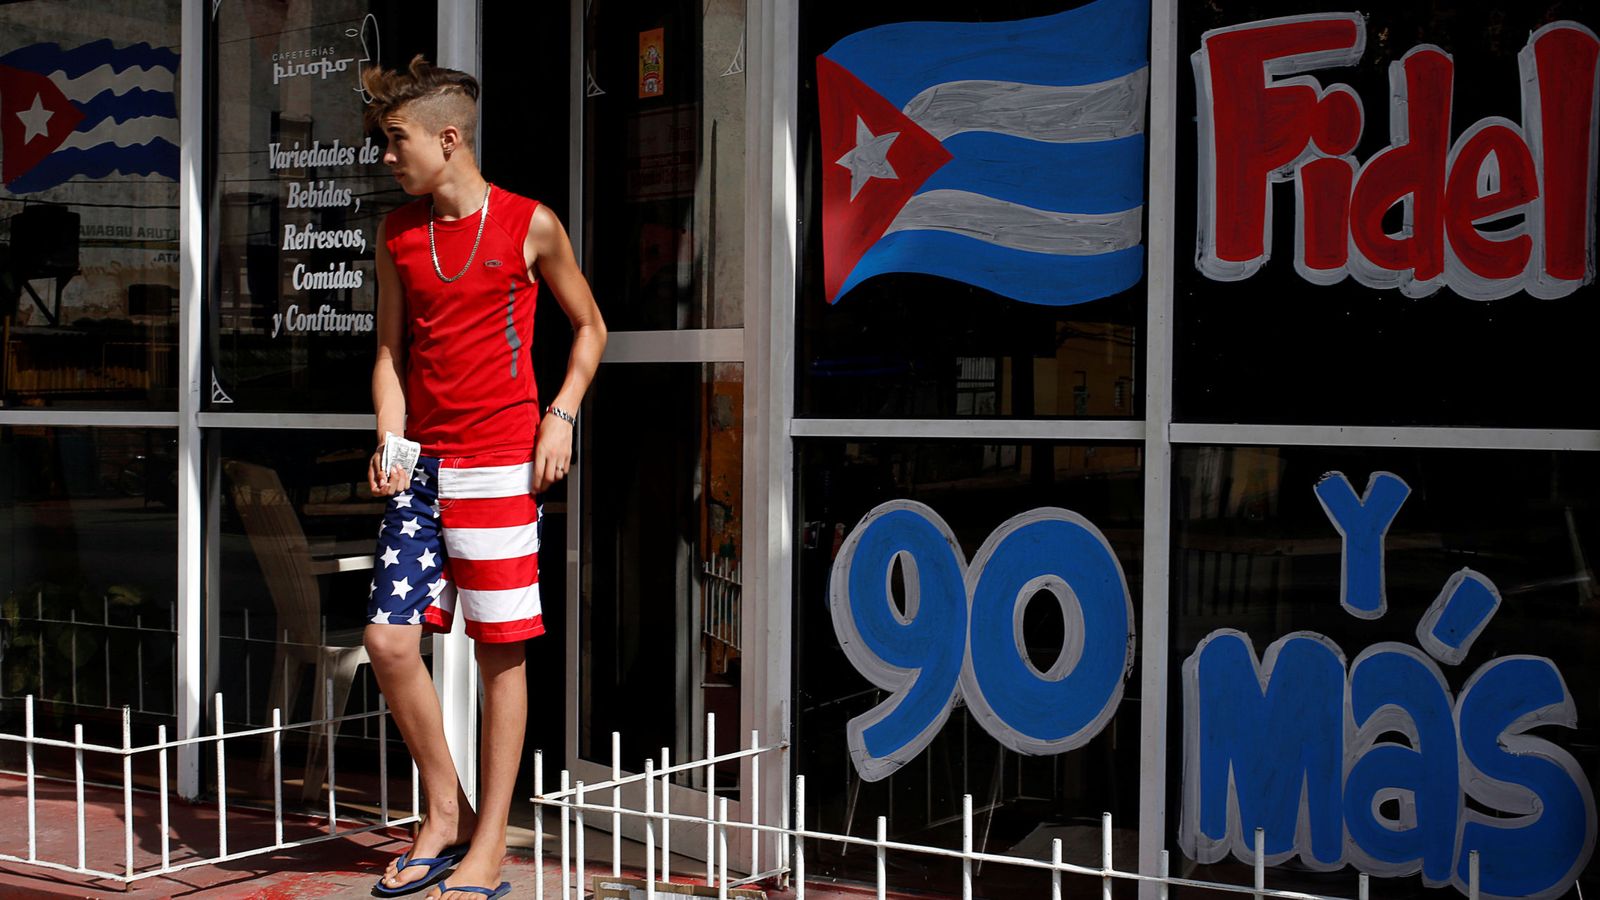 Foto: Un joven con unos pantalones con la bandera estadounidense sale de un restaurante en La Habana, en agosto de 2016 (Reuters)